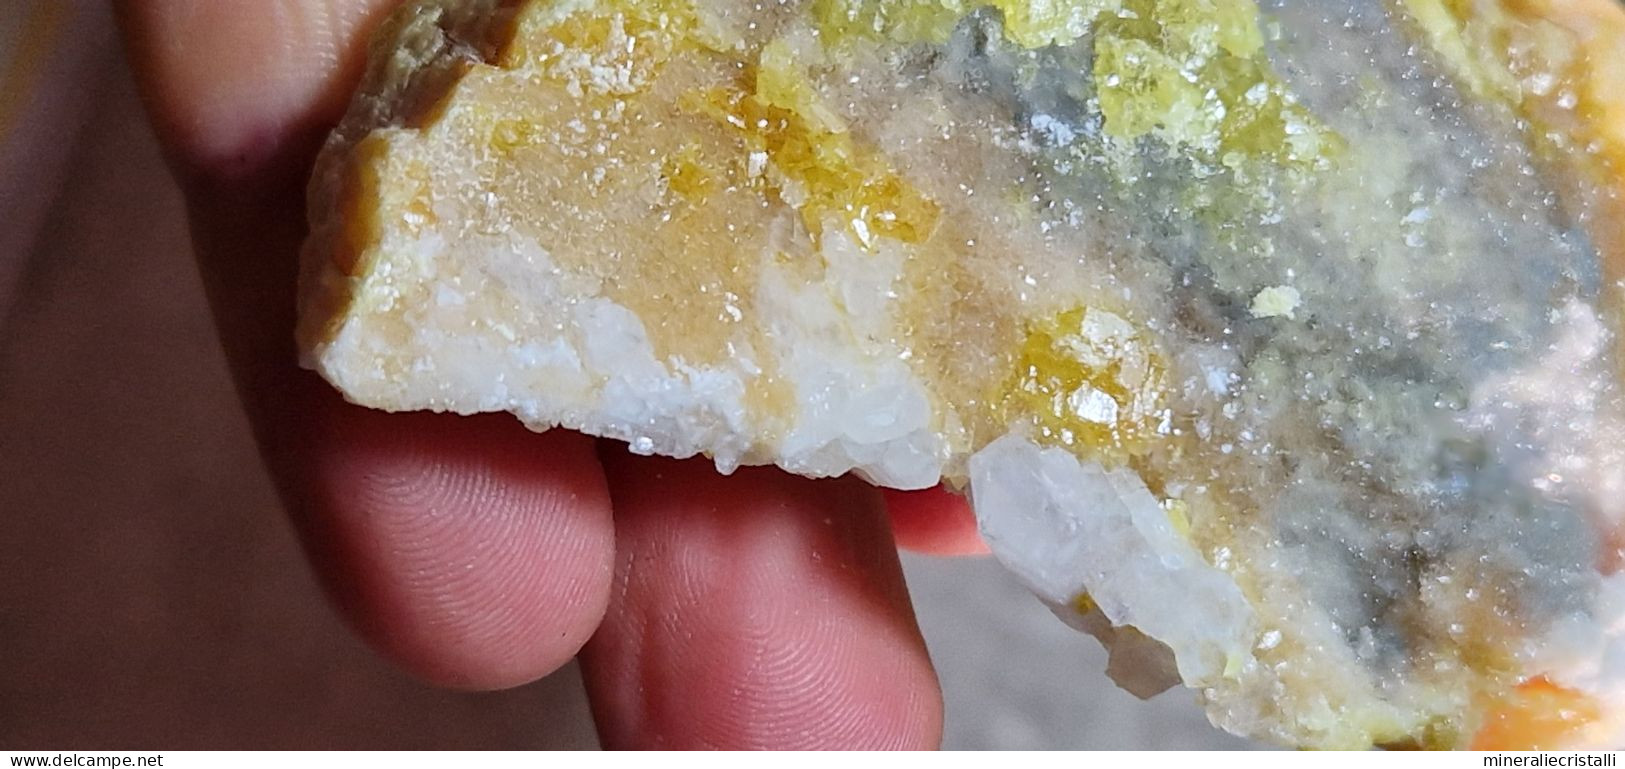 Zolfo celestina Cristalli fluorescenti miniera la grasta Sicilia  168gr